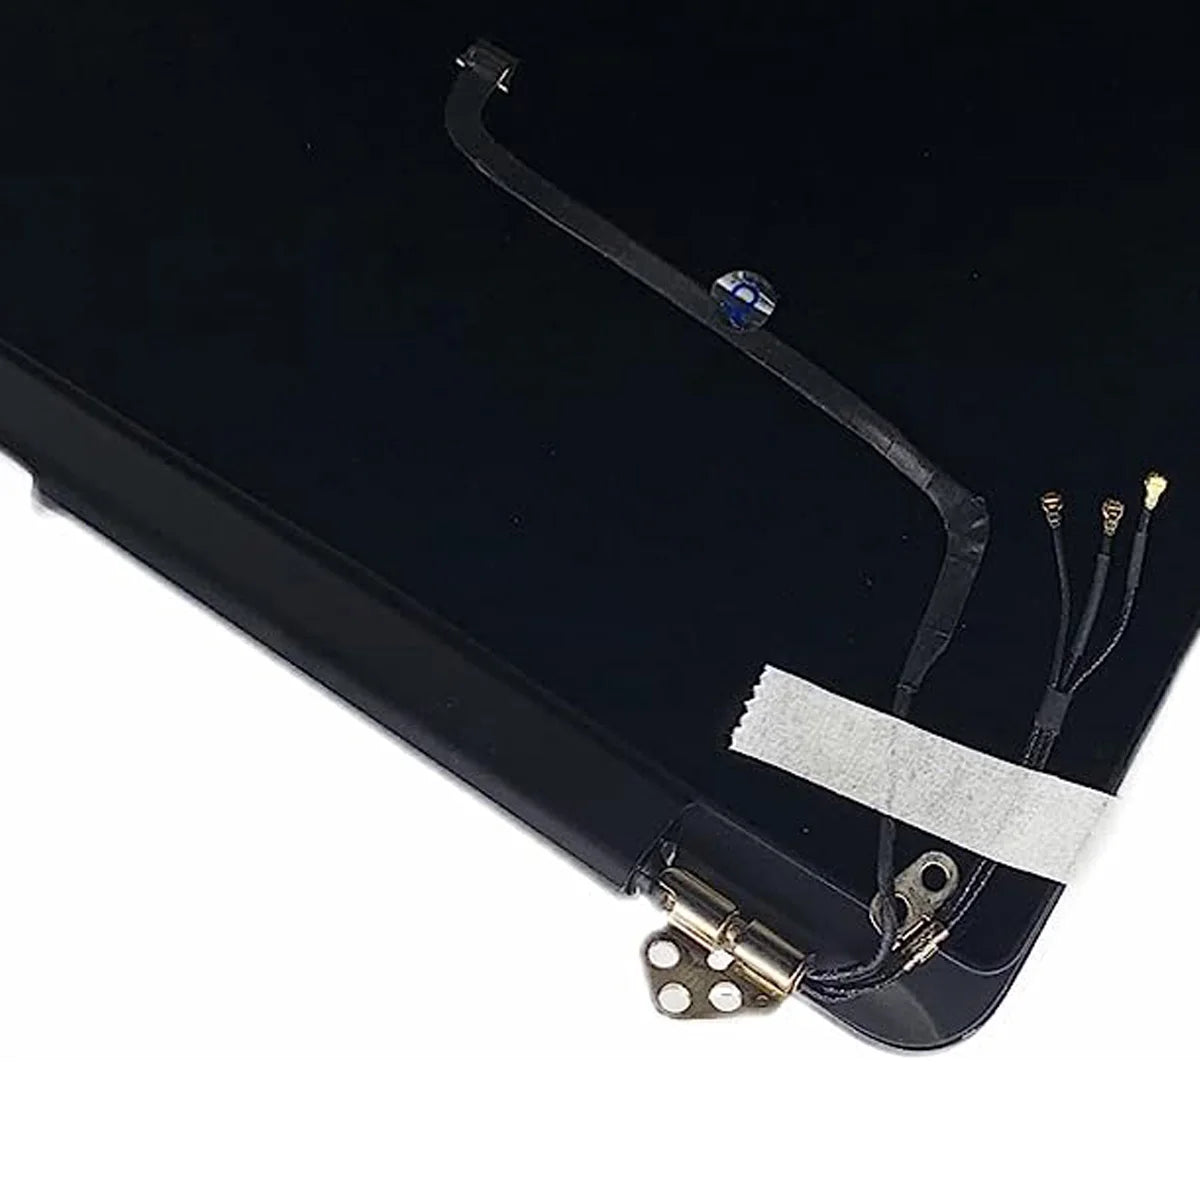 Amazon Ebay Top (SEVEN PUPPY) NUEVO para MacBook Pro 11 "A1465 2013-2015 Año Retina Pantalla LCD completa Reemplazo completo del ensamblaje